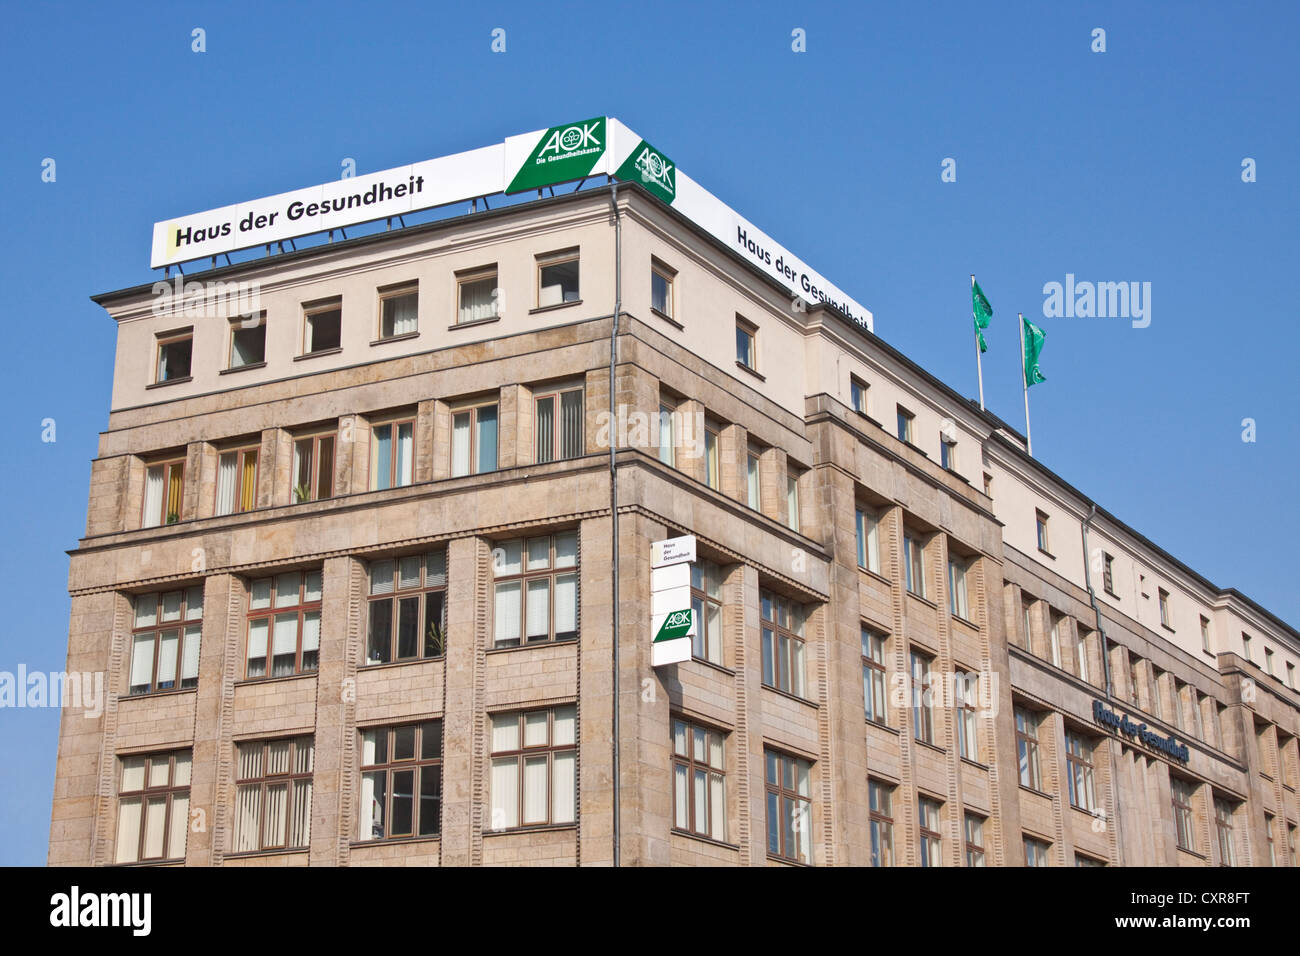 Haus der Gesundheit, maison de santé, compagnie d'assurance maladie AOK, Berlin, Germany, Europe Banque D'Images